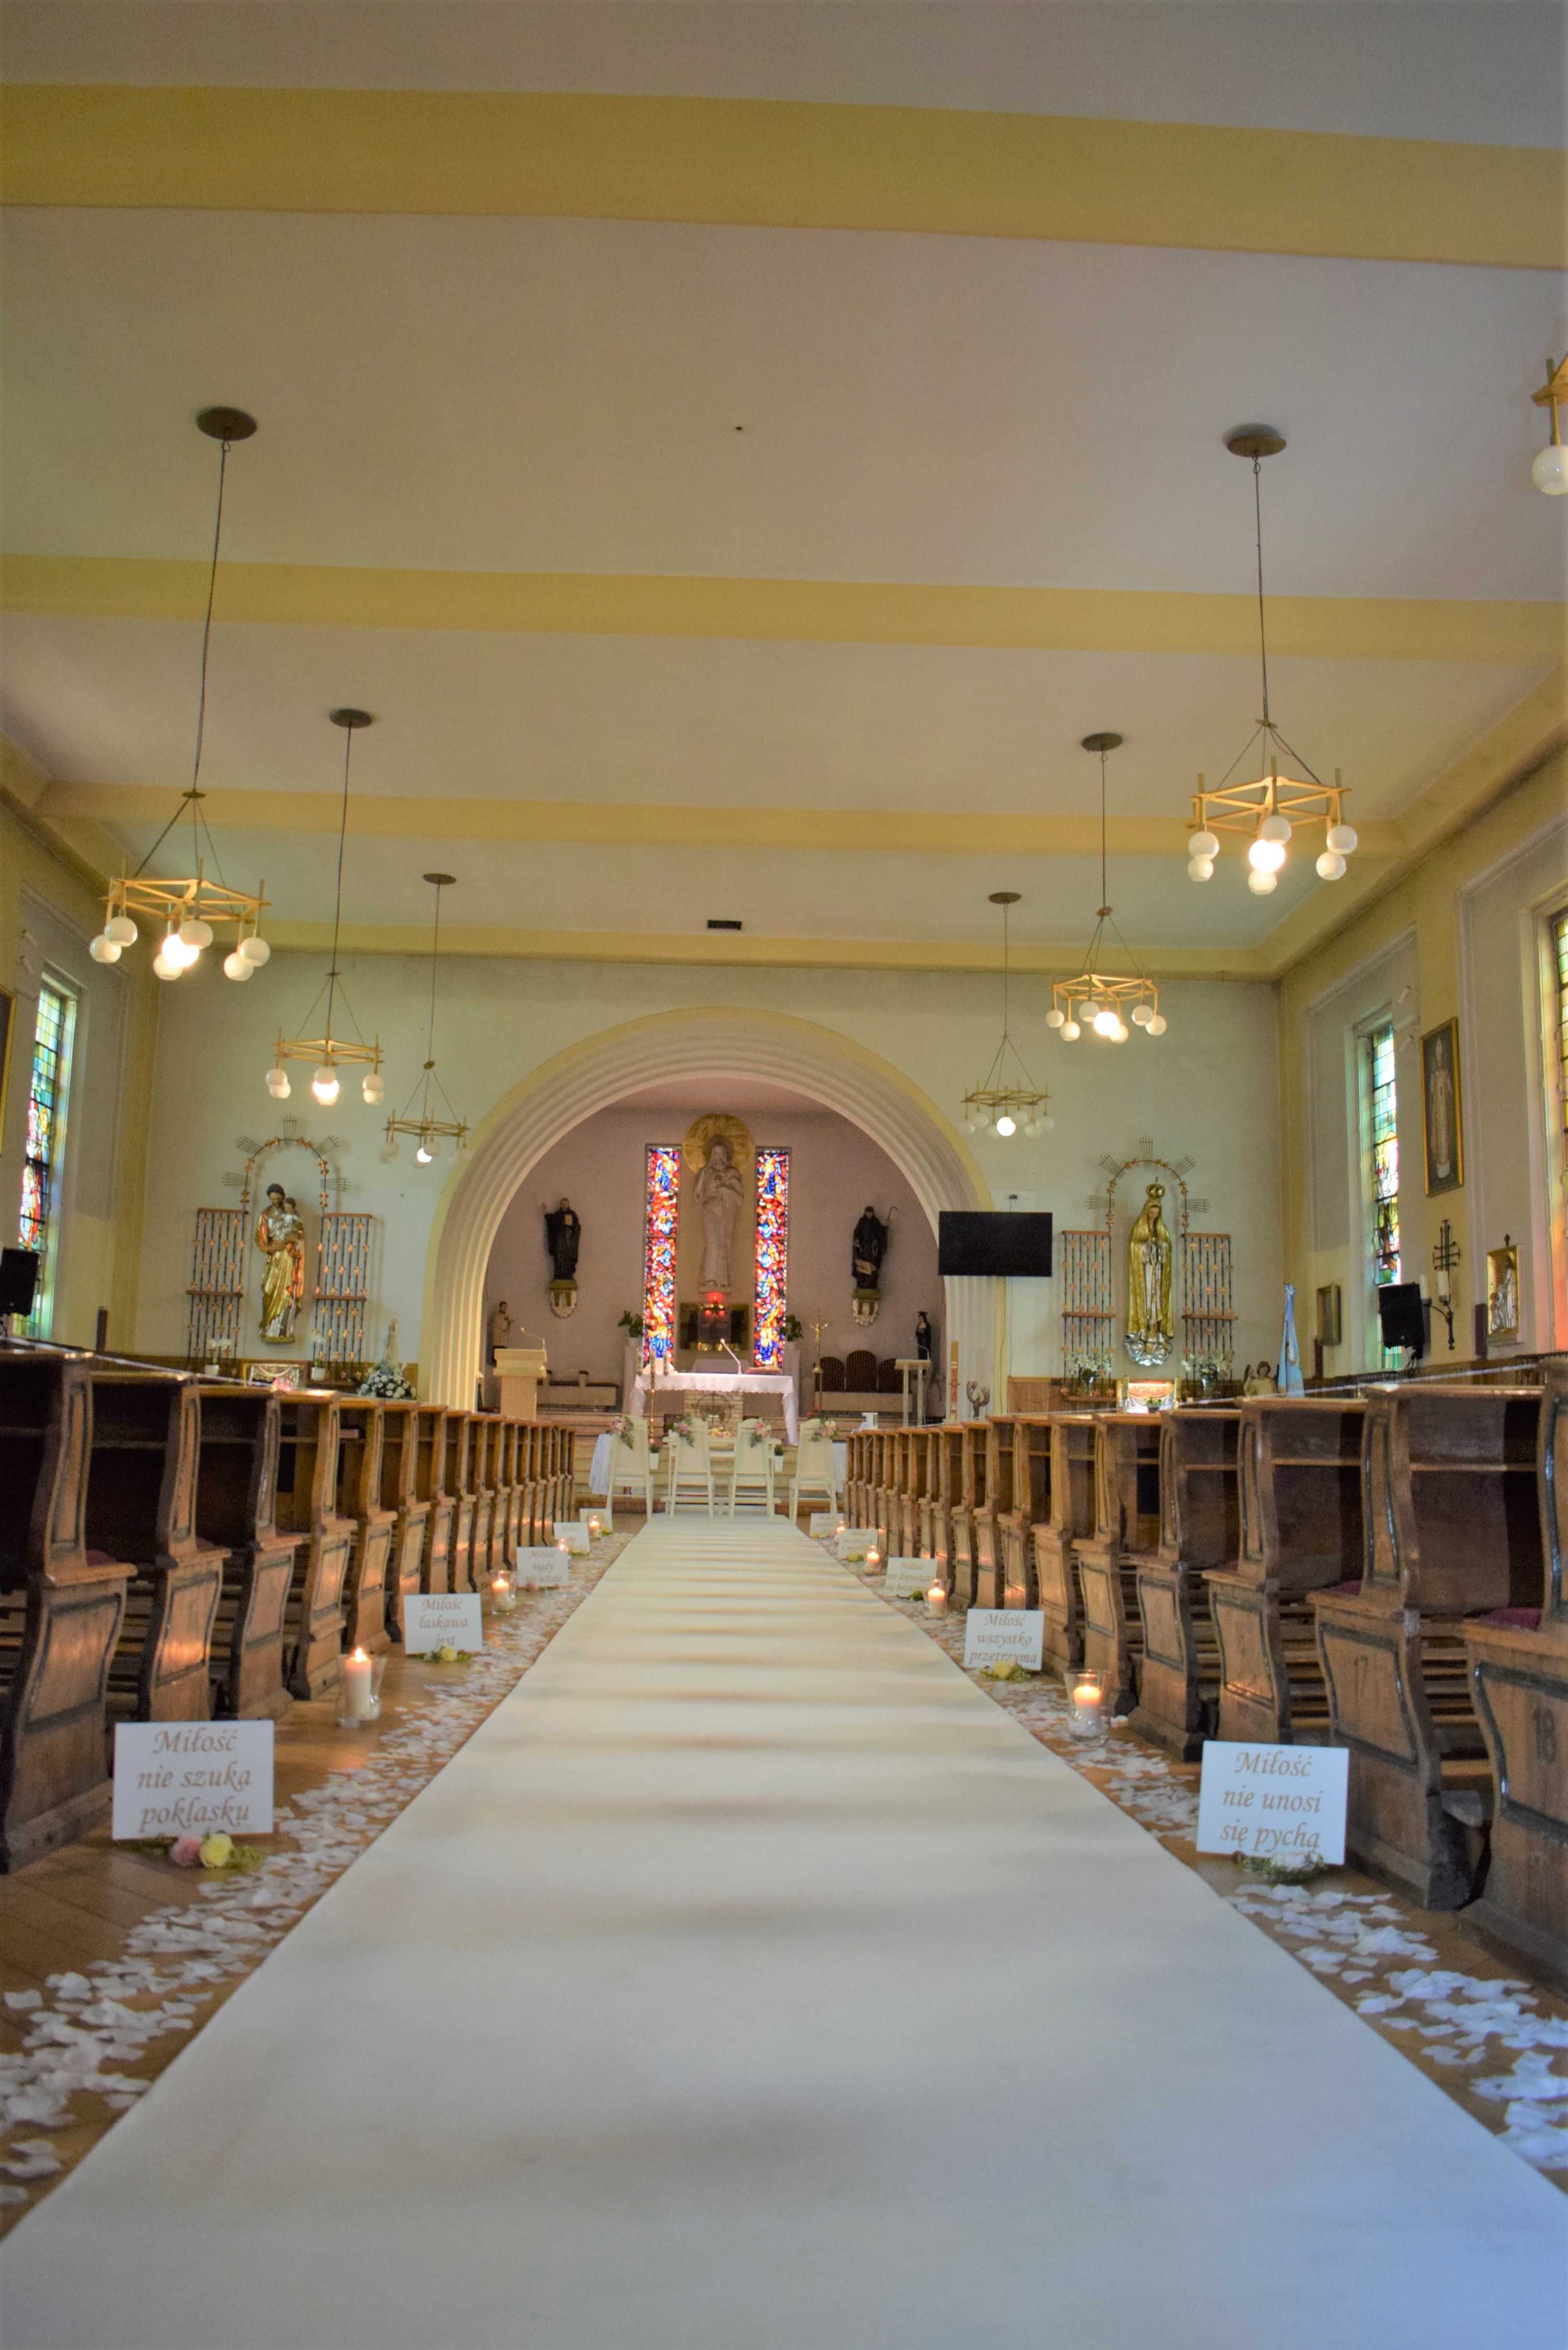 Ślub - dekoracja kościoła biały dywan, świeczniki